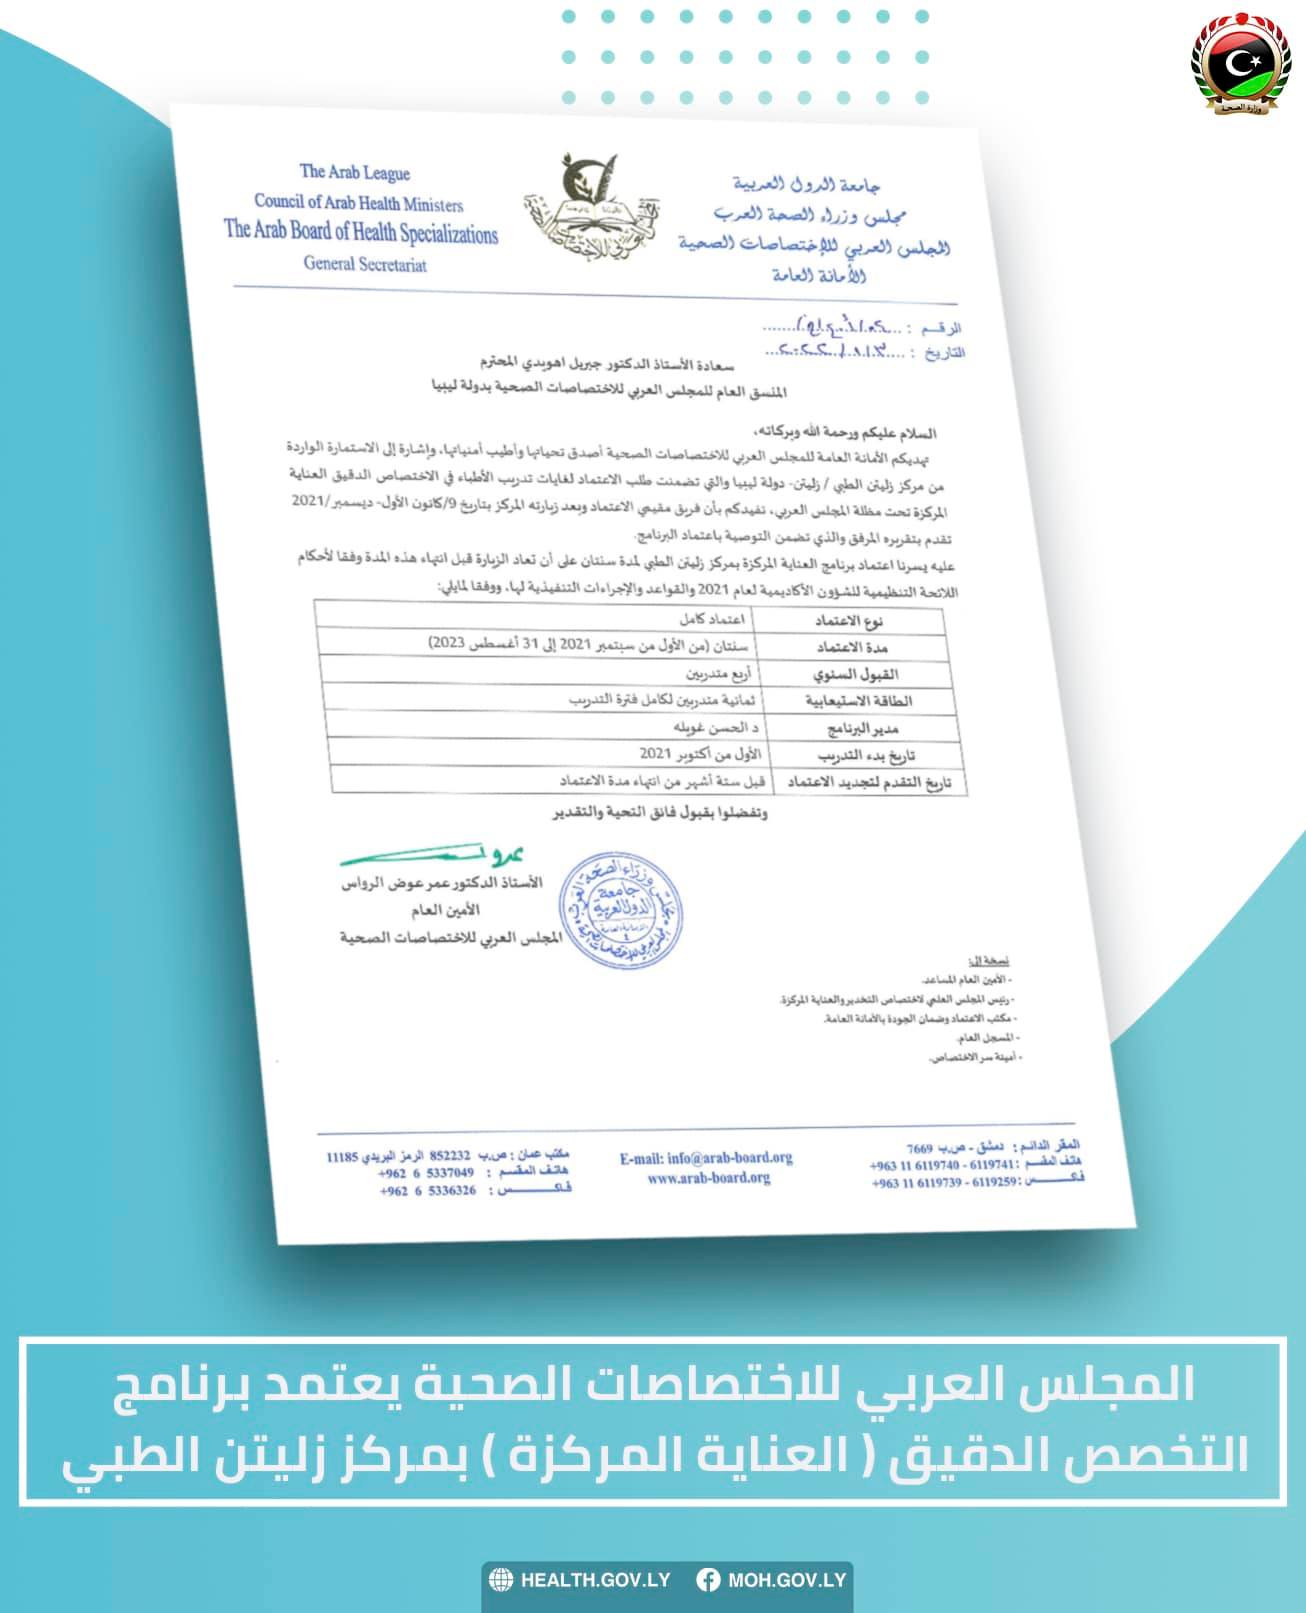 المجلس العربي للاختصاصات الصحية-مكتب عمّان»  «يمنح مركز زليتن الطبي» الاعتماد الكامل لتنفيذ برنامج «التخصص الدقيق العناية المركّزة.